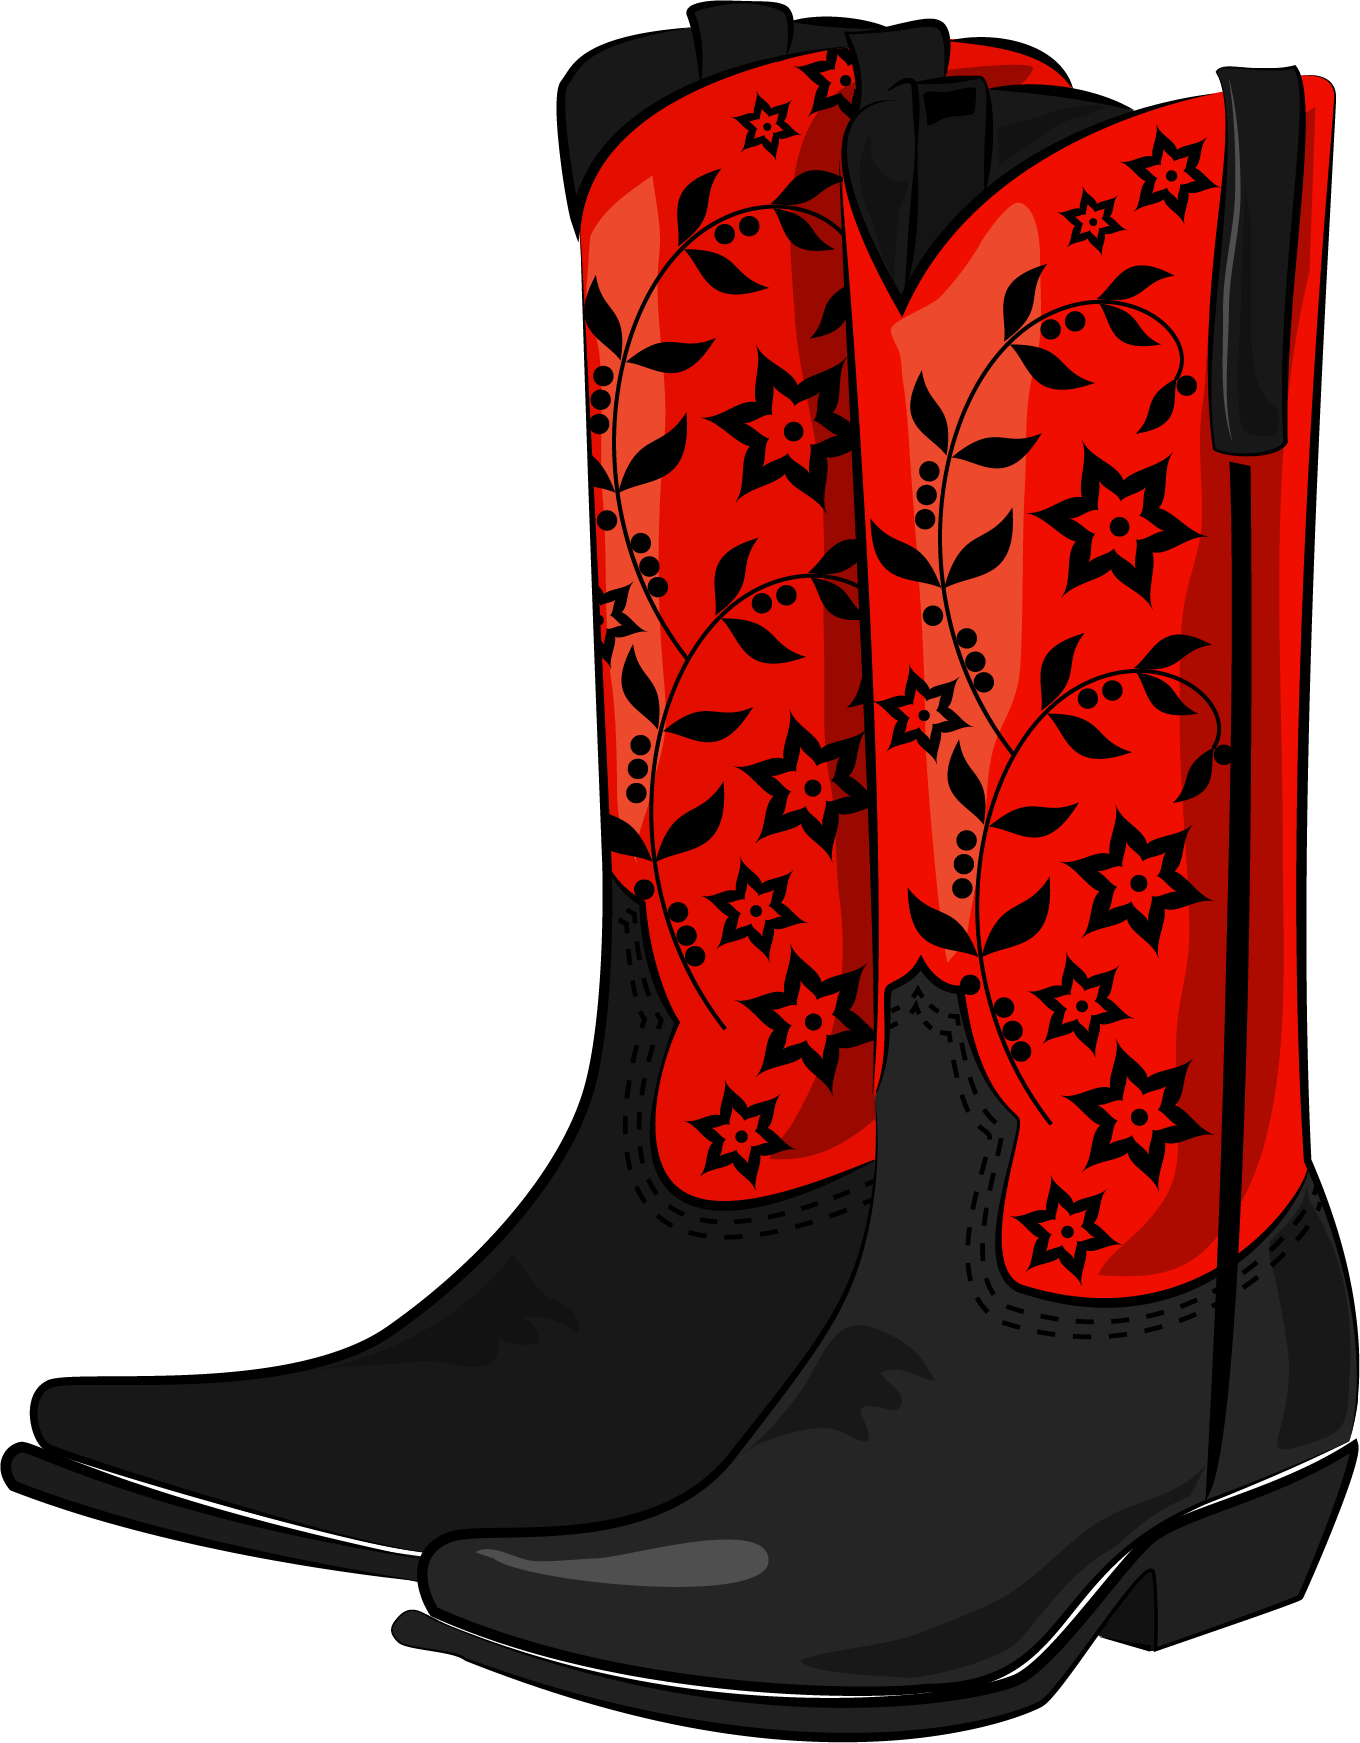 Cowboy Boot High Heeled Footwear Clip Art - Cowboy Boot High Heeled Footwear Clip Art (1360x1743)